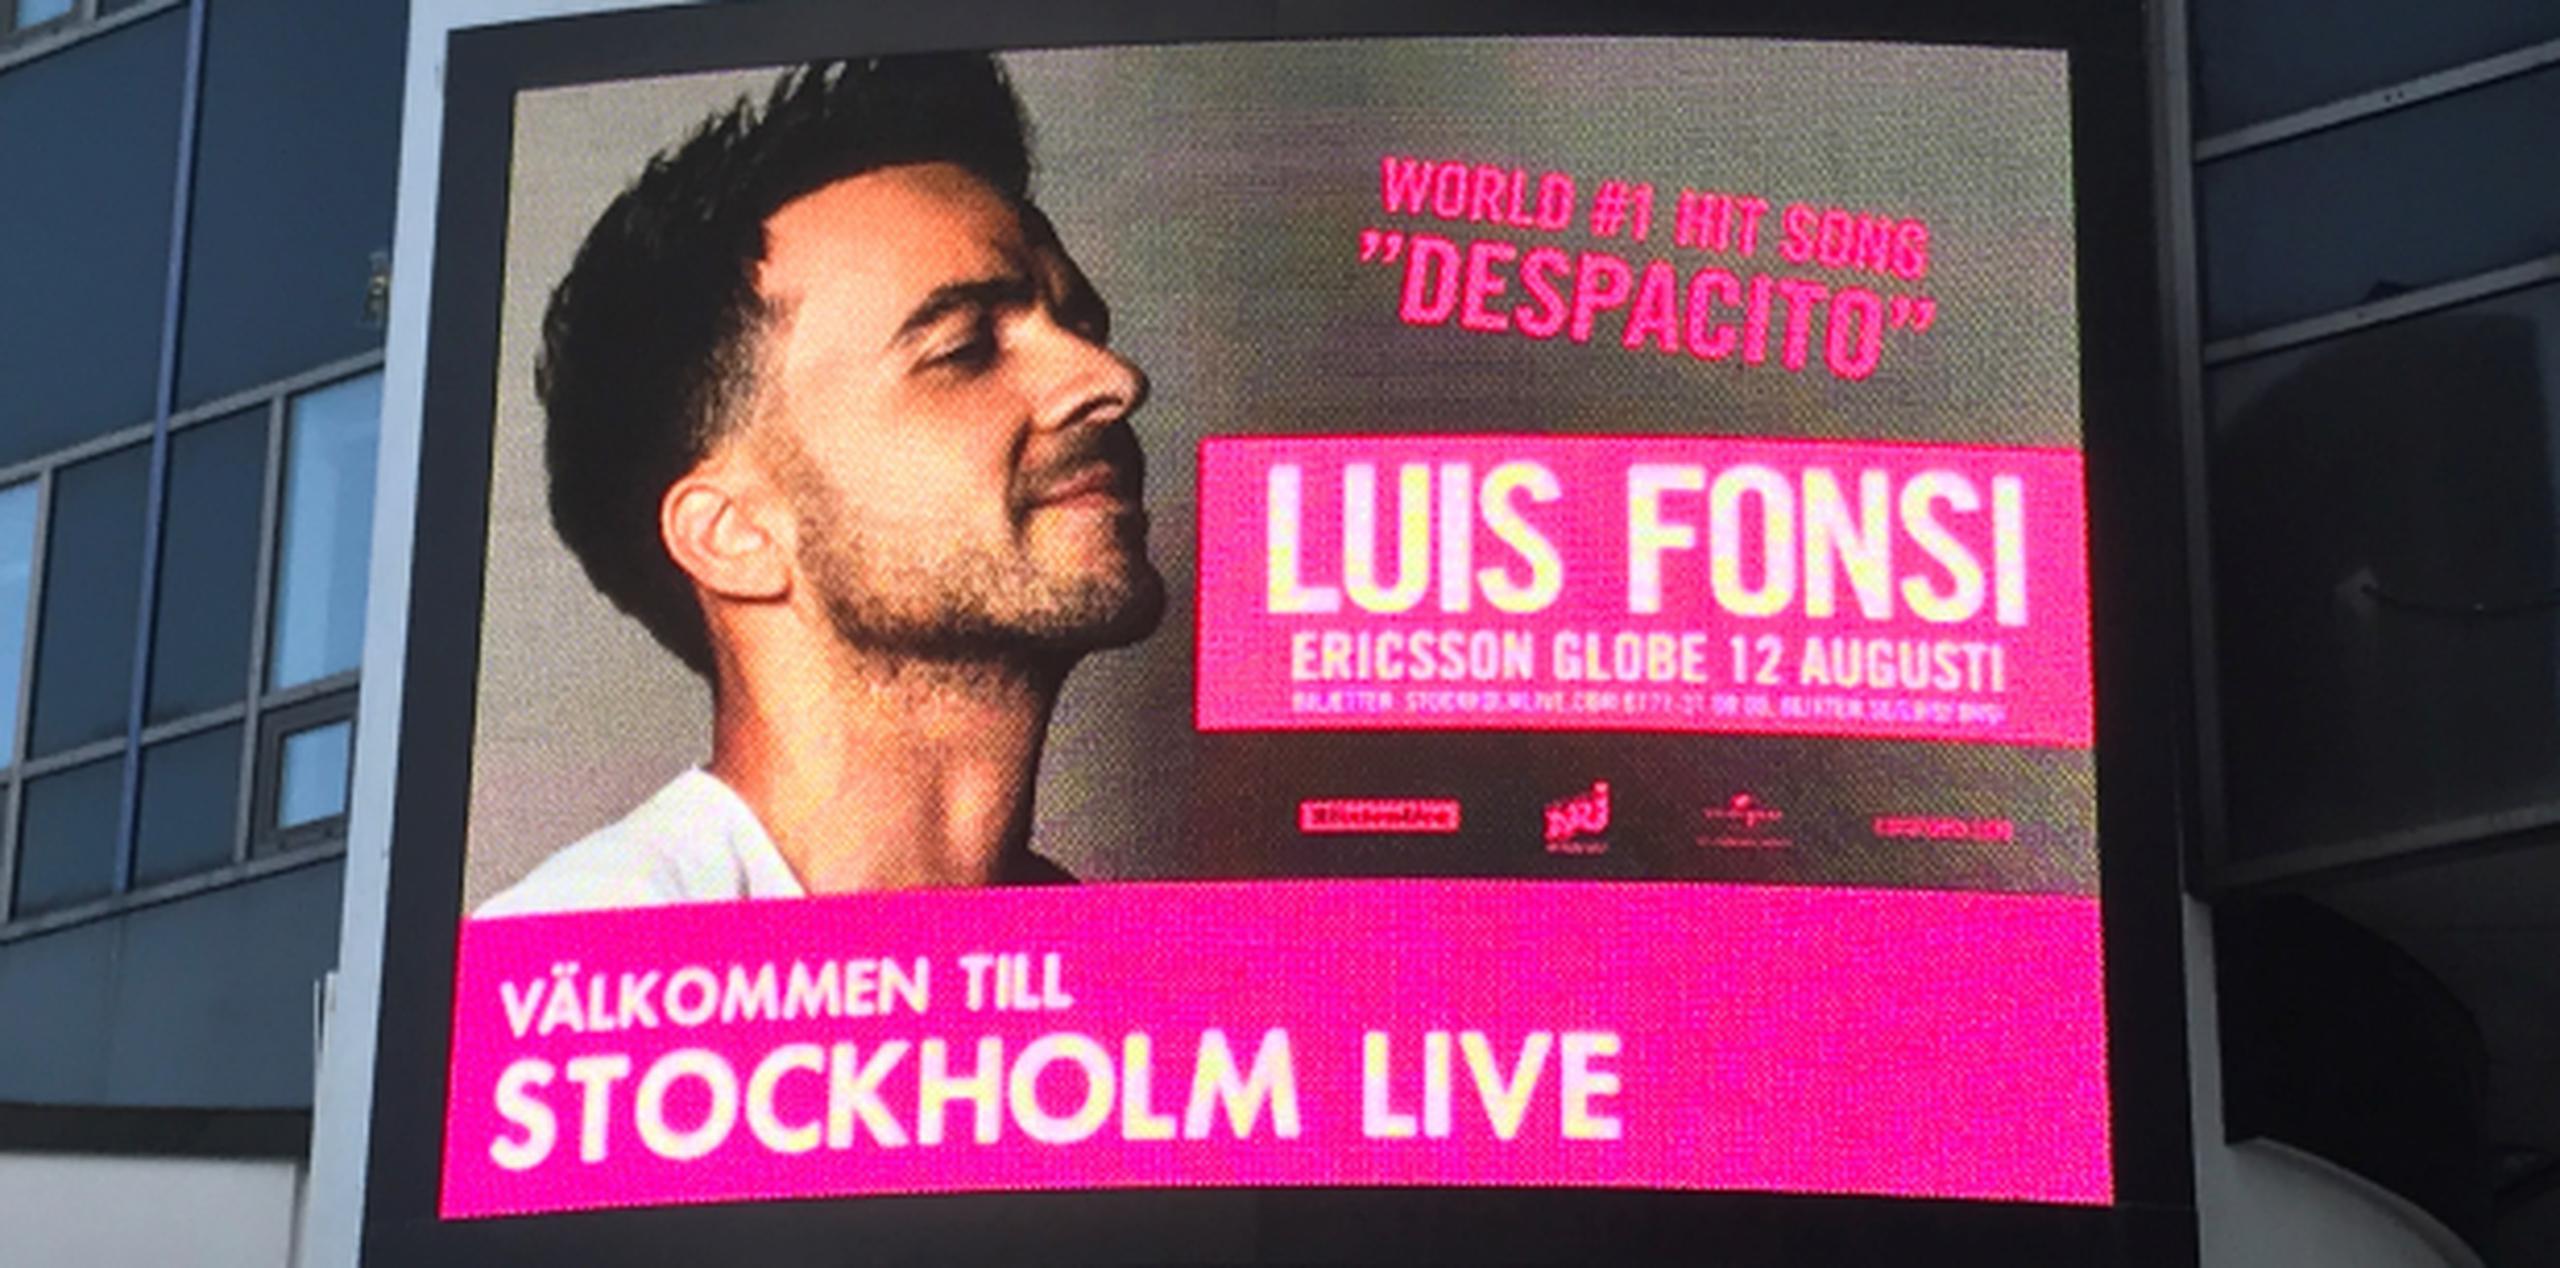 En agosto, Lusi Fonsi se presentará en concierto en Estocolmo, Suecia. (ana.lopez@gfrmedia.com)